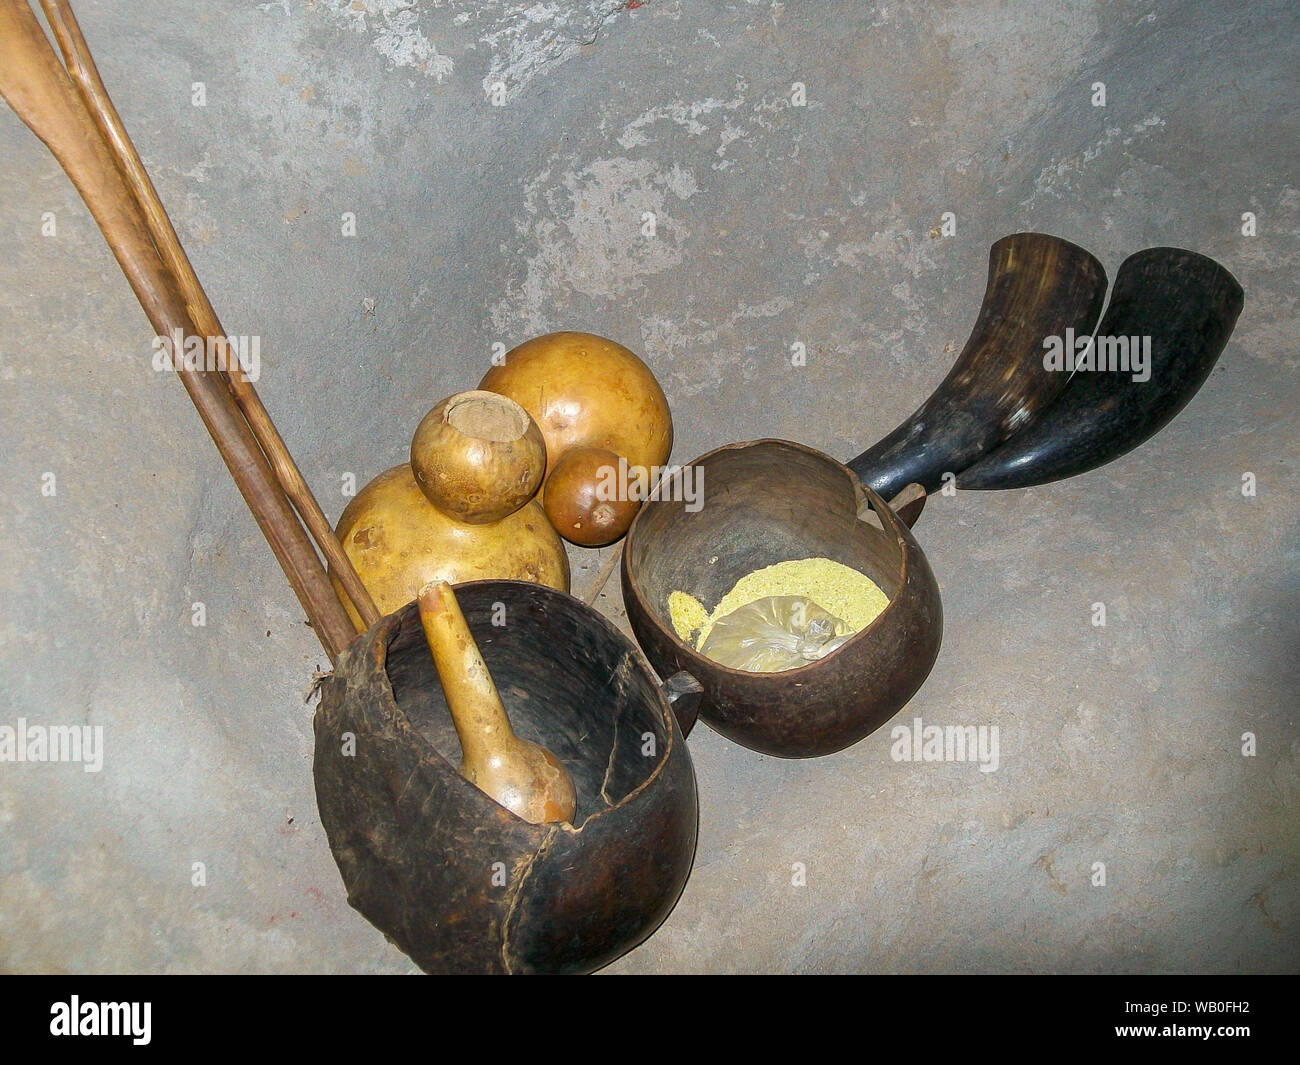 Alte Afrikanische natürliche Geschirr mit natrual Dinge verwendet, um zu kochen und lagern Sie Lebensmittel gemacht. Stockfoto